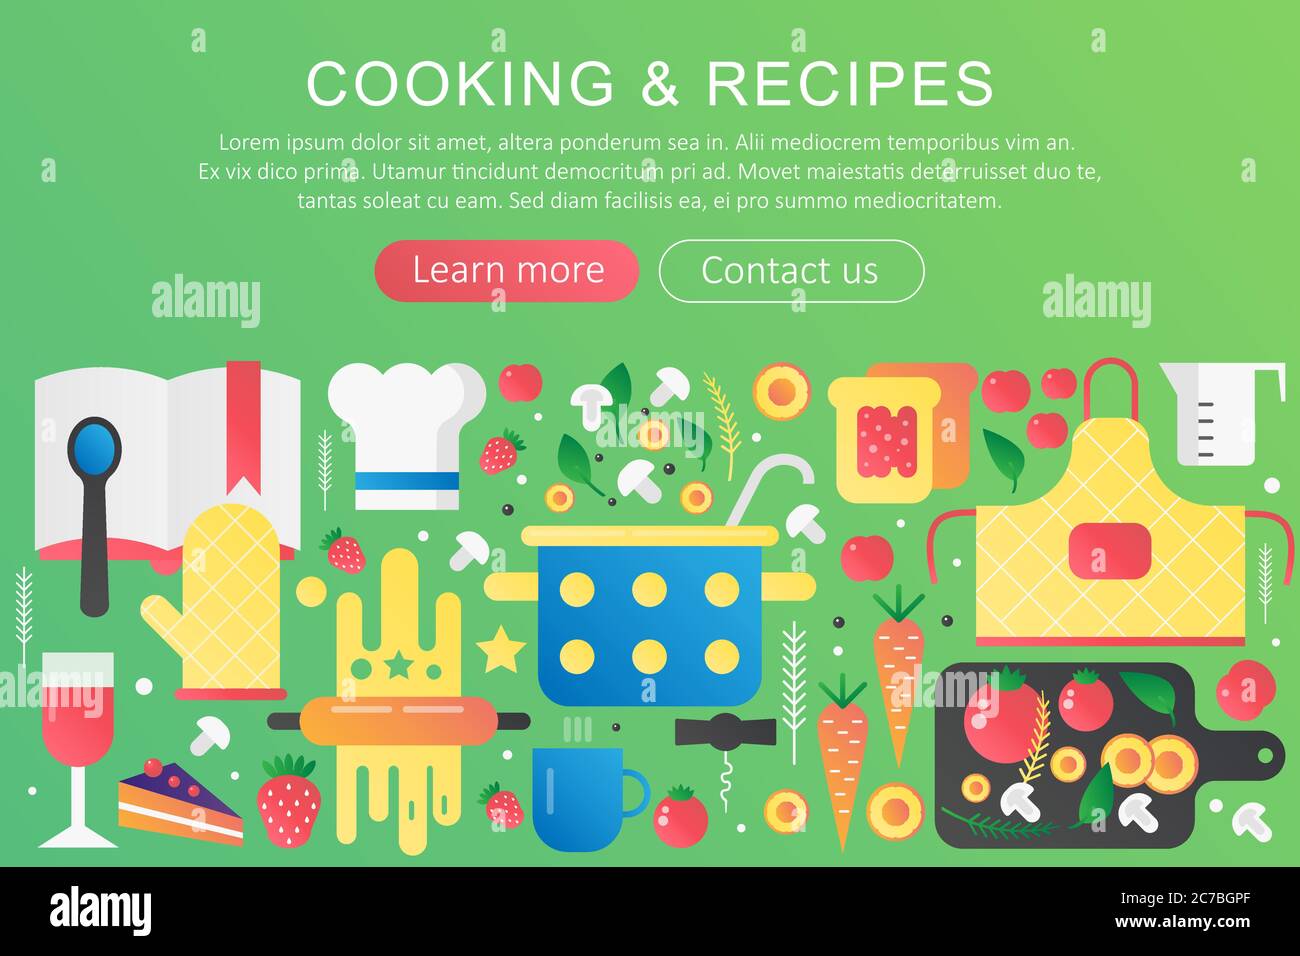 Vettoriale trendy piatto gradiente colore cucina e ricette concept banner con icone e testo Illustrazione Vettoriale